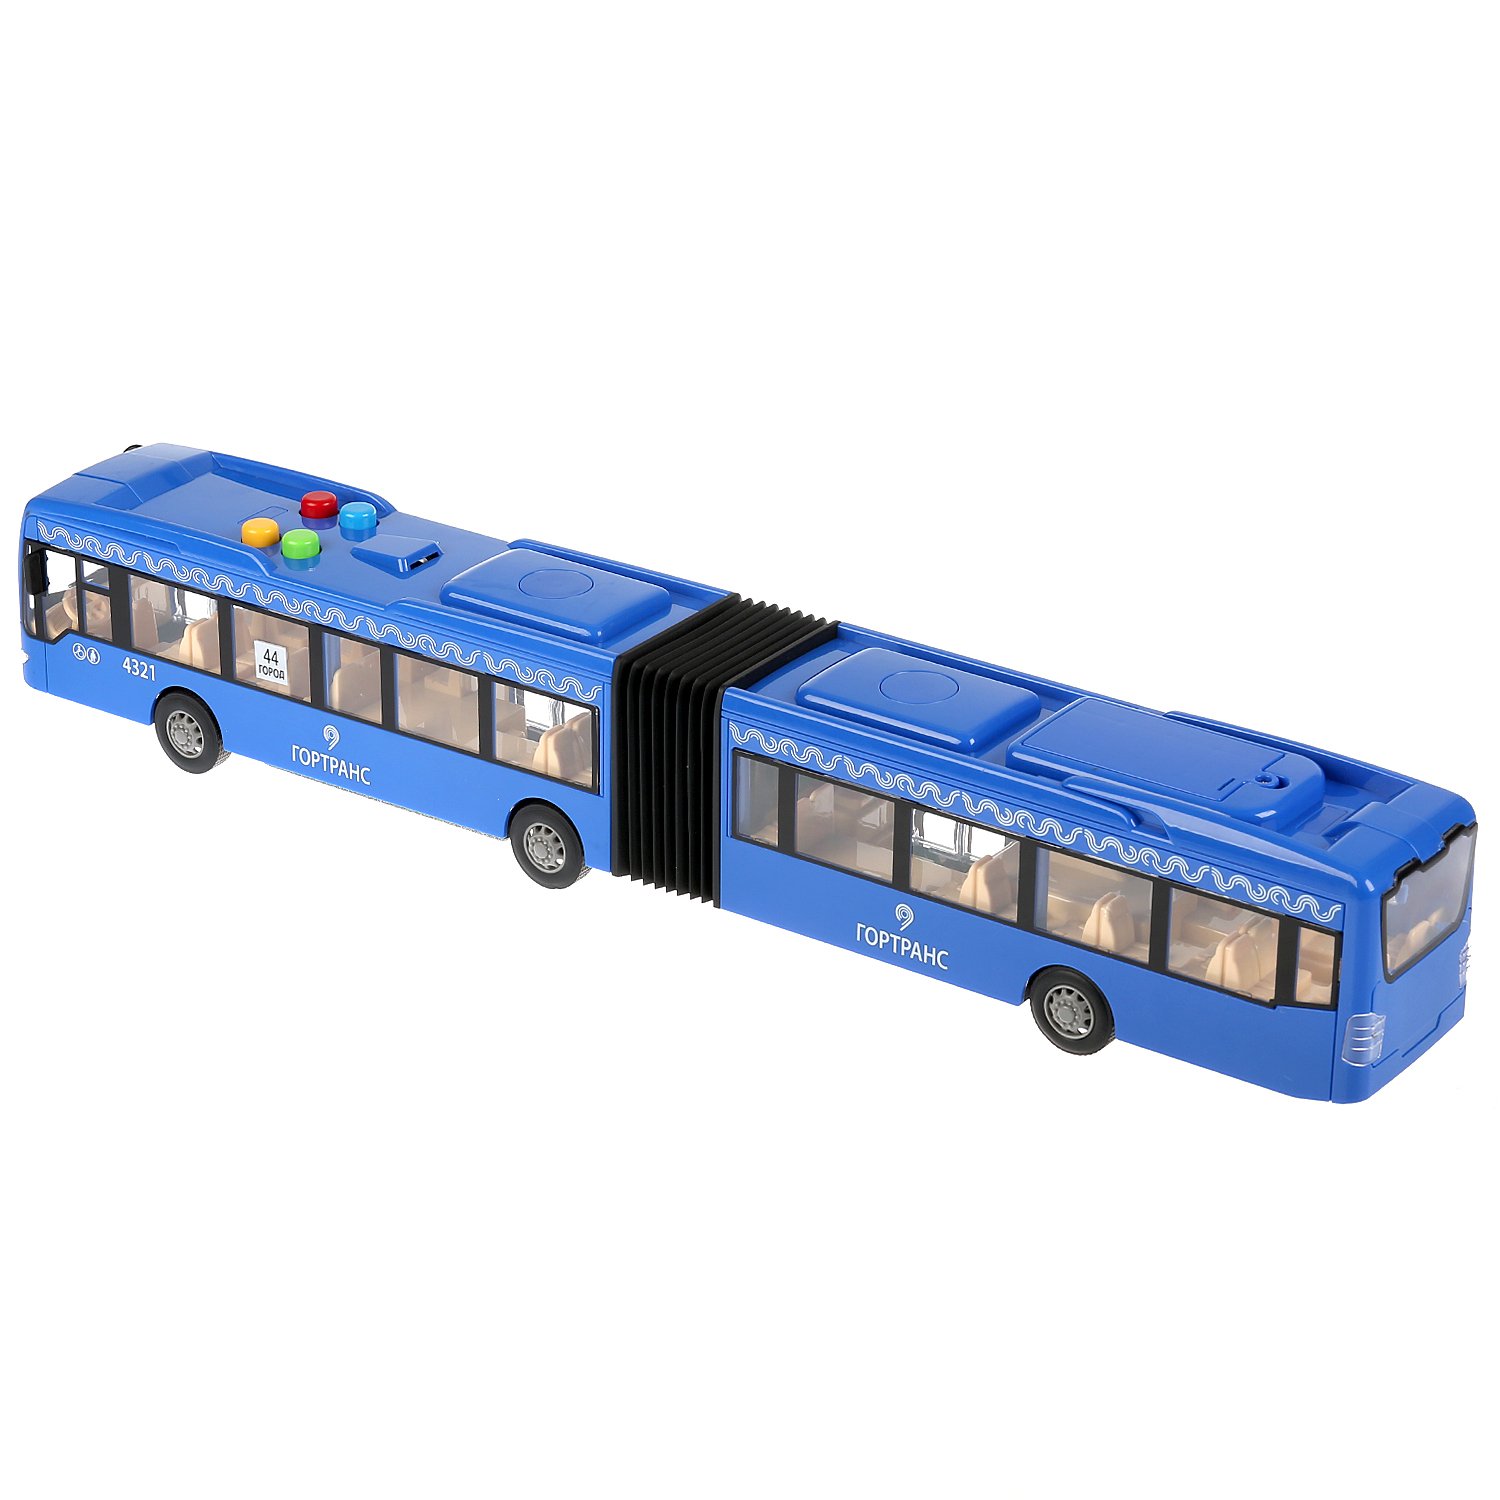 Автобус Технопарк инерционный 280869